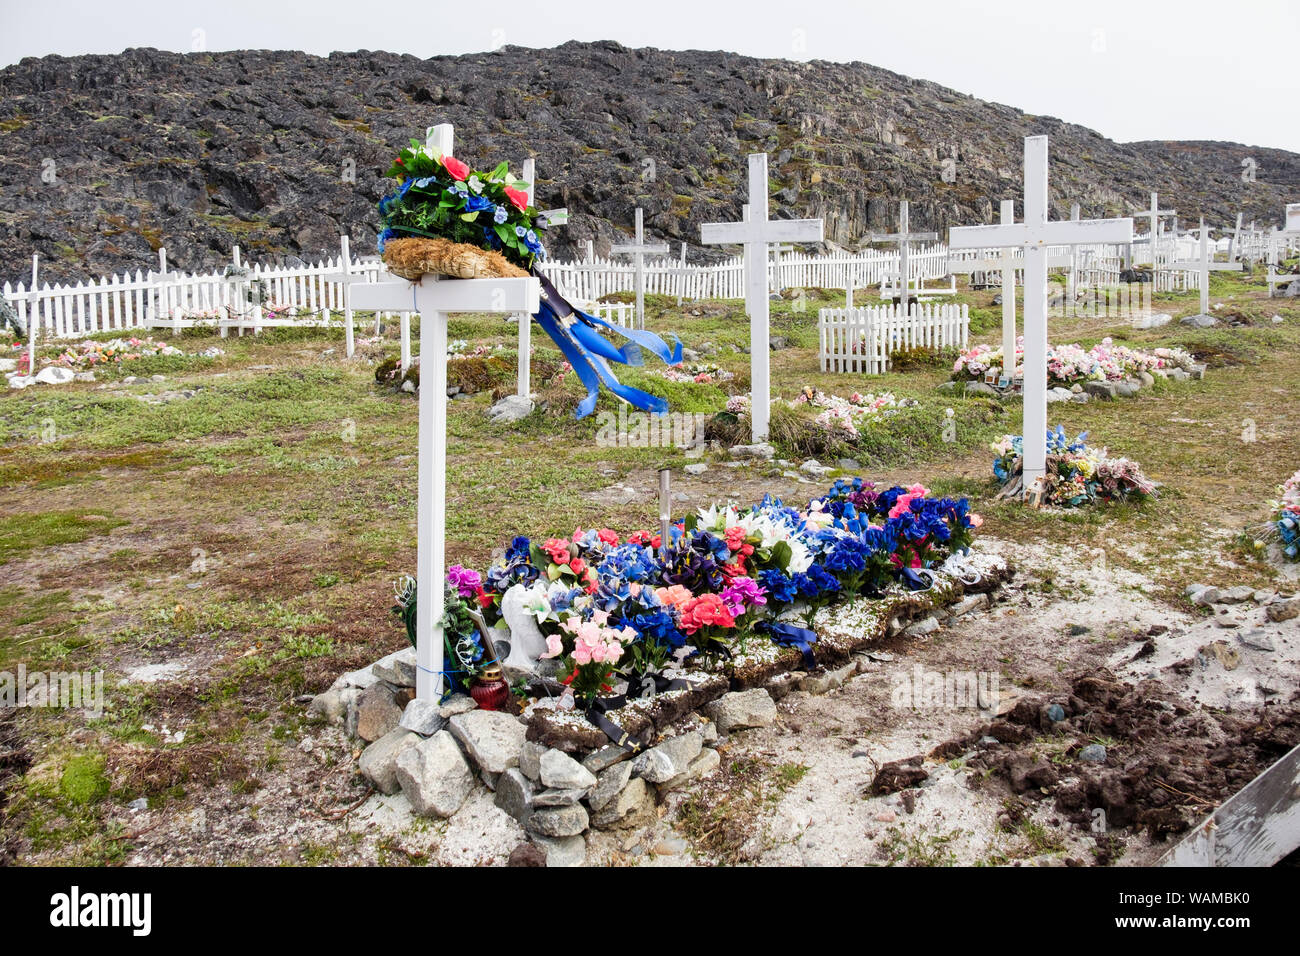 Plastica fiori artificiali e bianco croci di legno sulla tradizionale insediamento inuit tombe in un cimitero. Itilleq, Qeqqata, Groenlandia Foto Stock